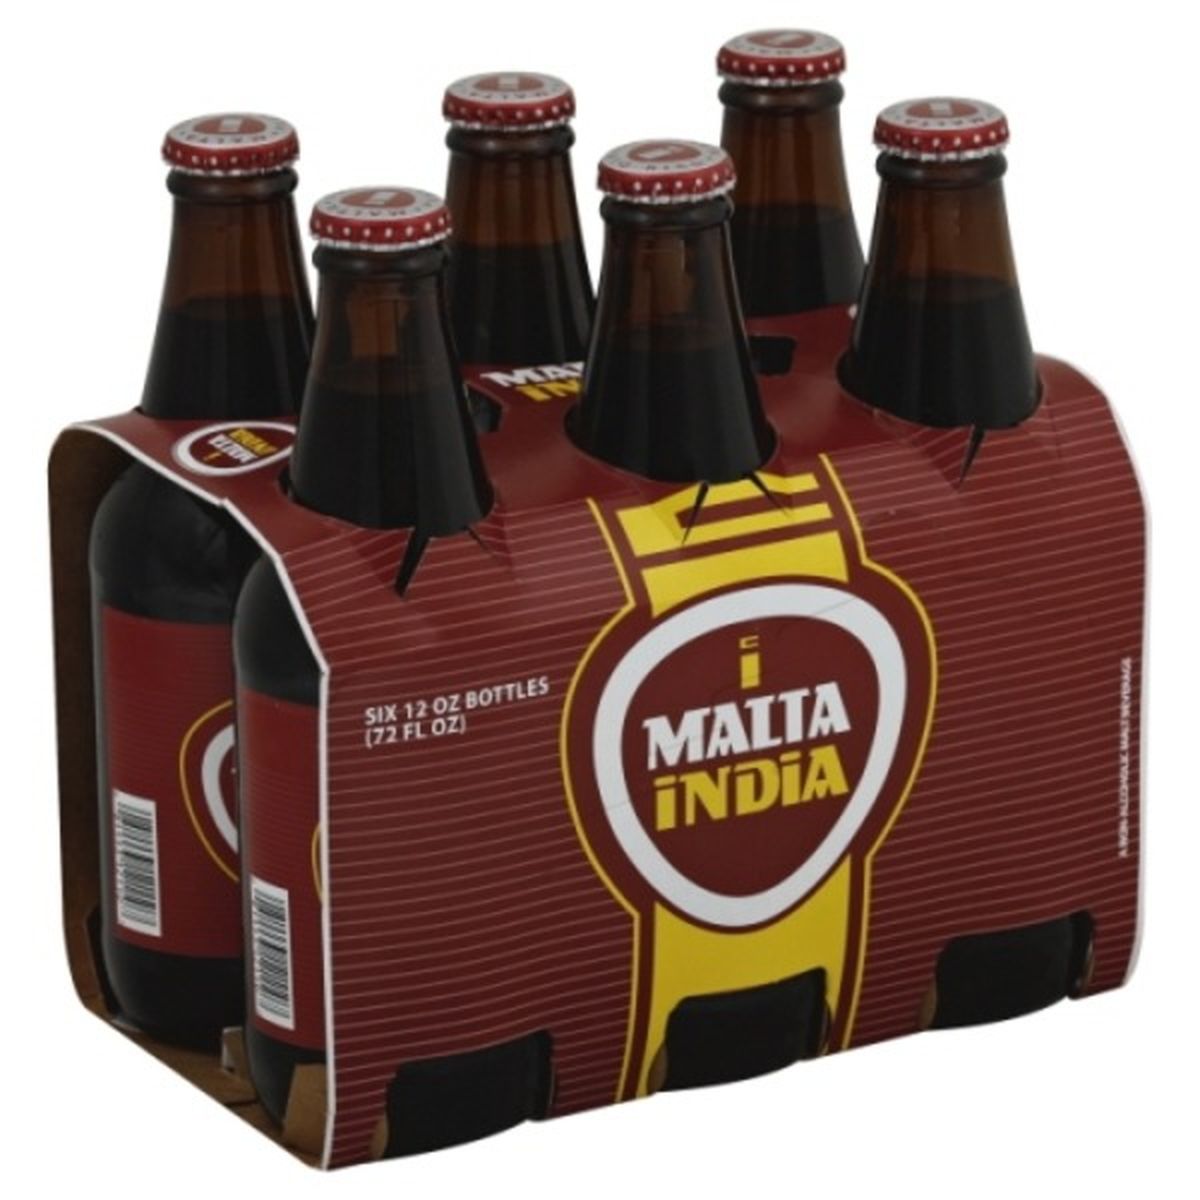 Calories in Malta India Malt Beverage, A Non-Alcoholic